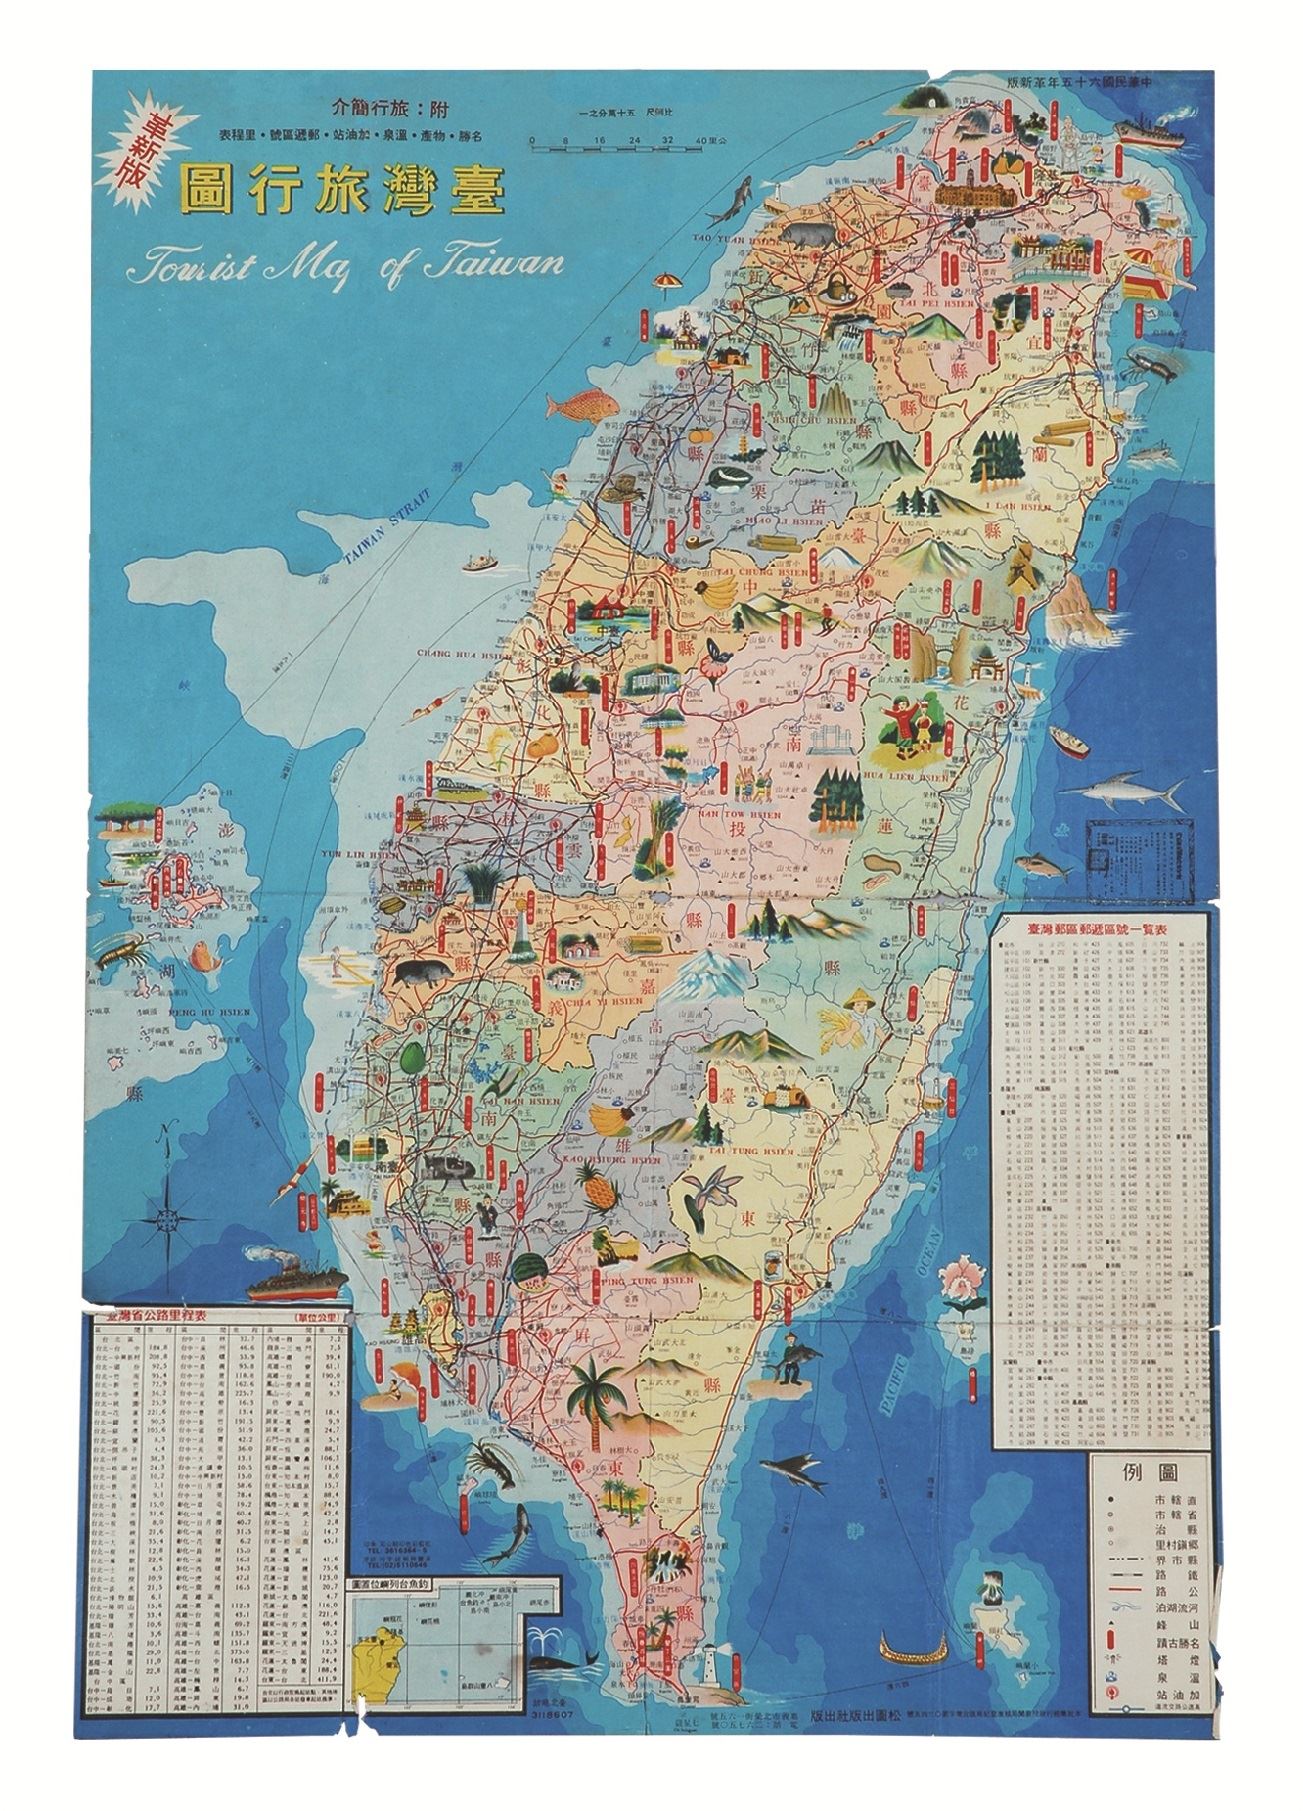 地圖明信片4(1976年) -臺灣旅行地圖